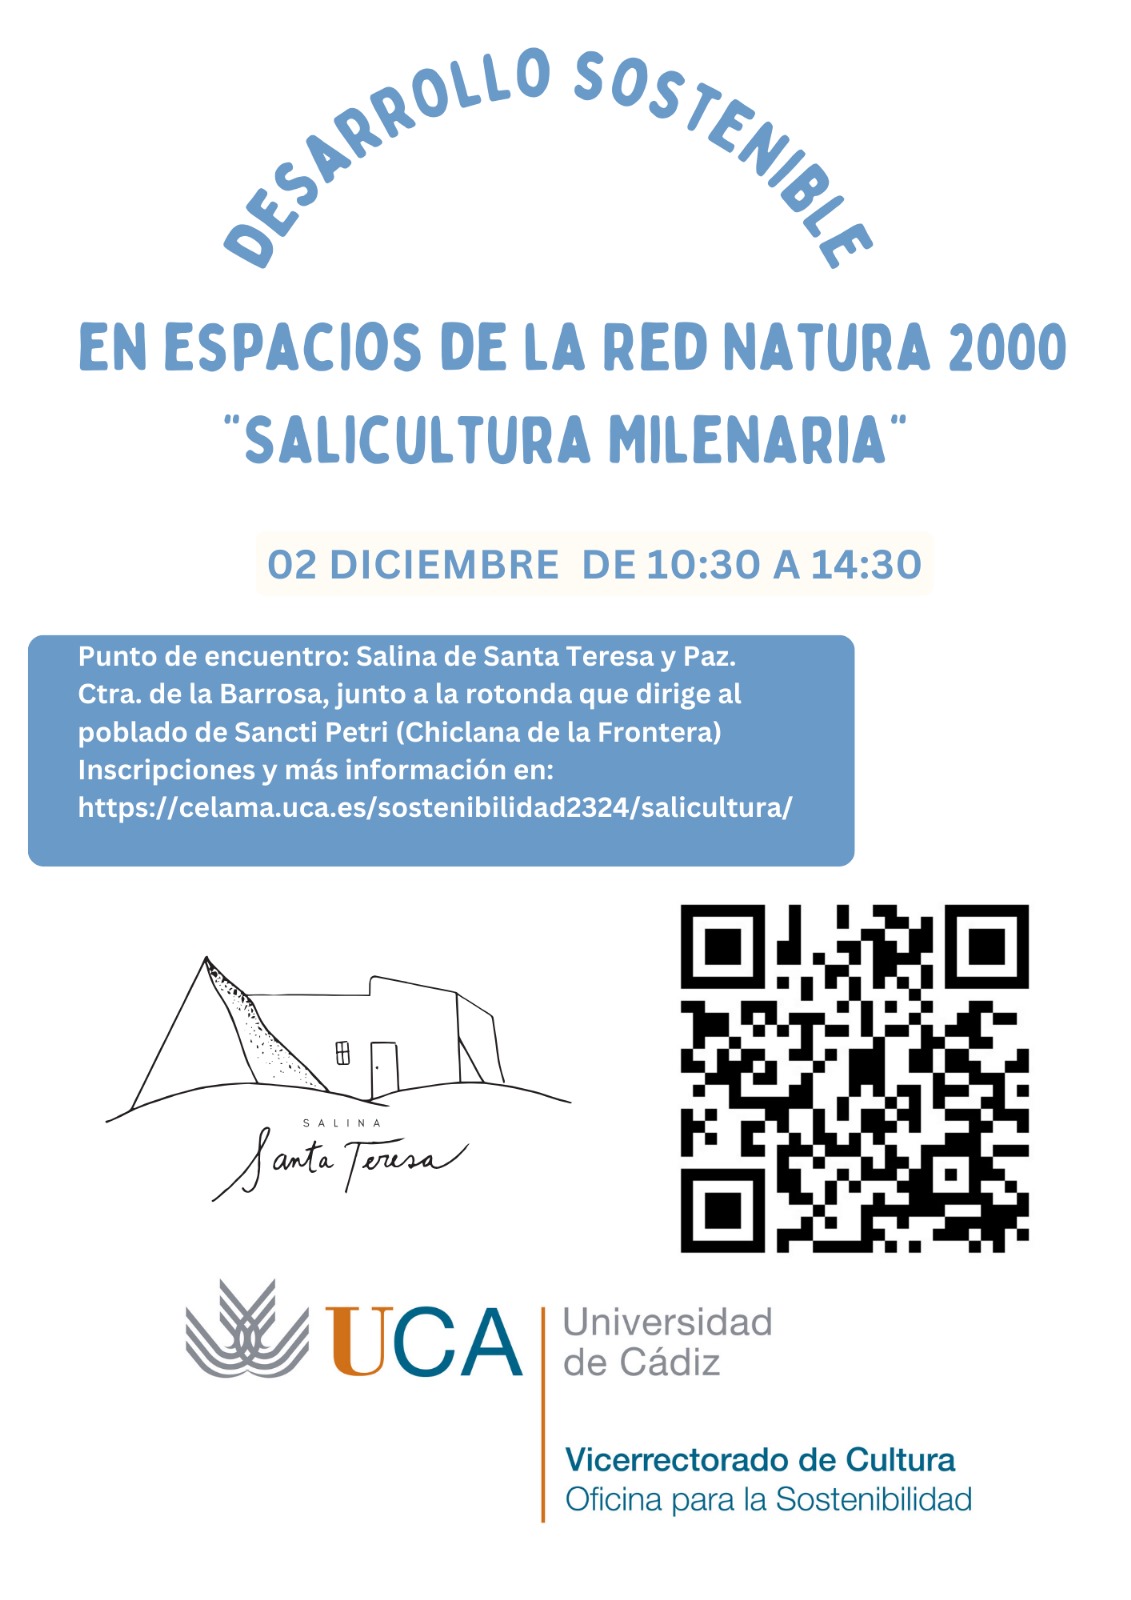 Jornada de sensibilización sobre Desarrollo Sostenible en espacios de la Red Natura 2000 “Salicultura Milenaria”